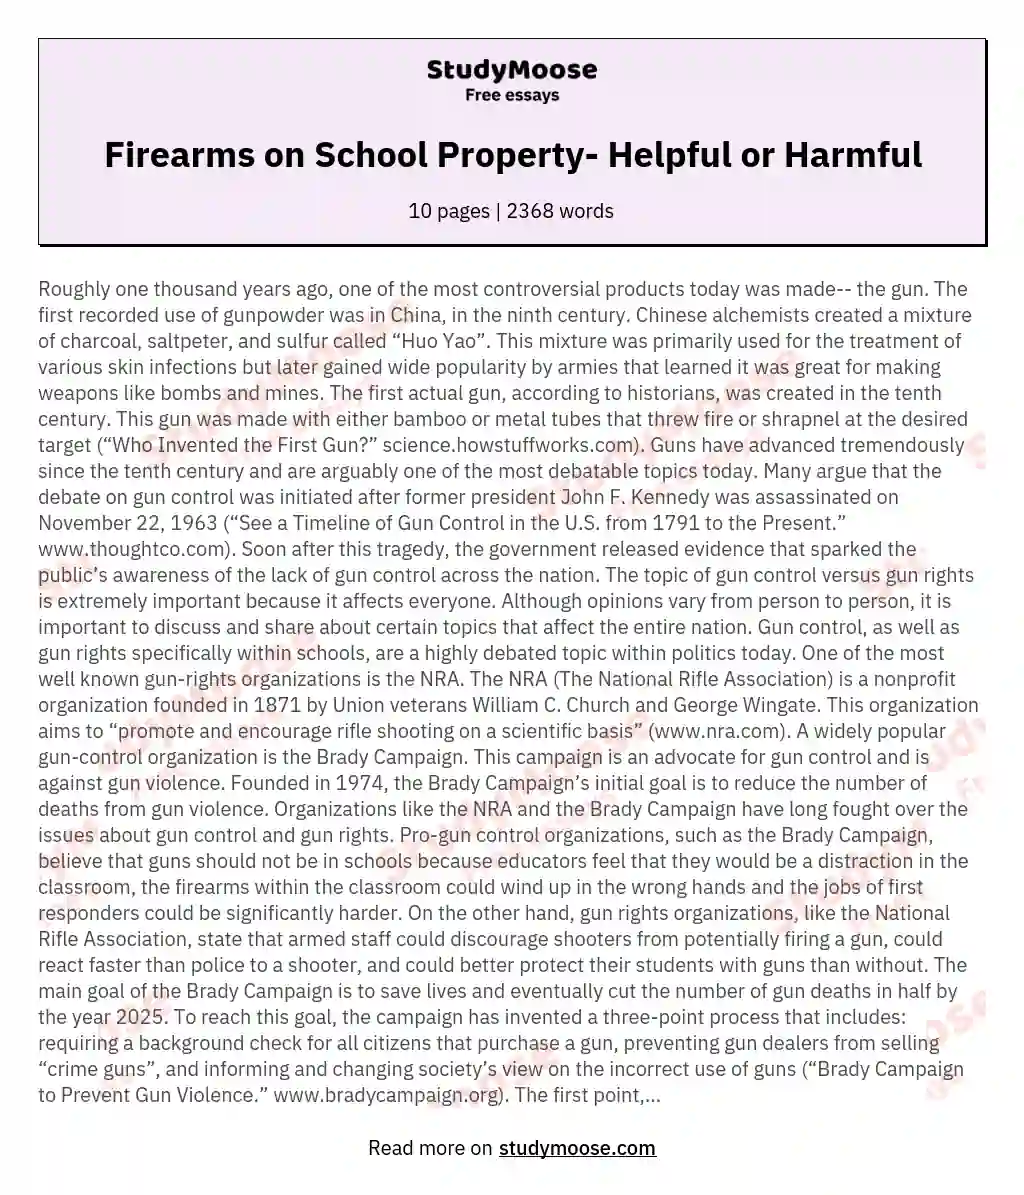 Firearms on School Property- Helpful or Harmful essay